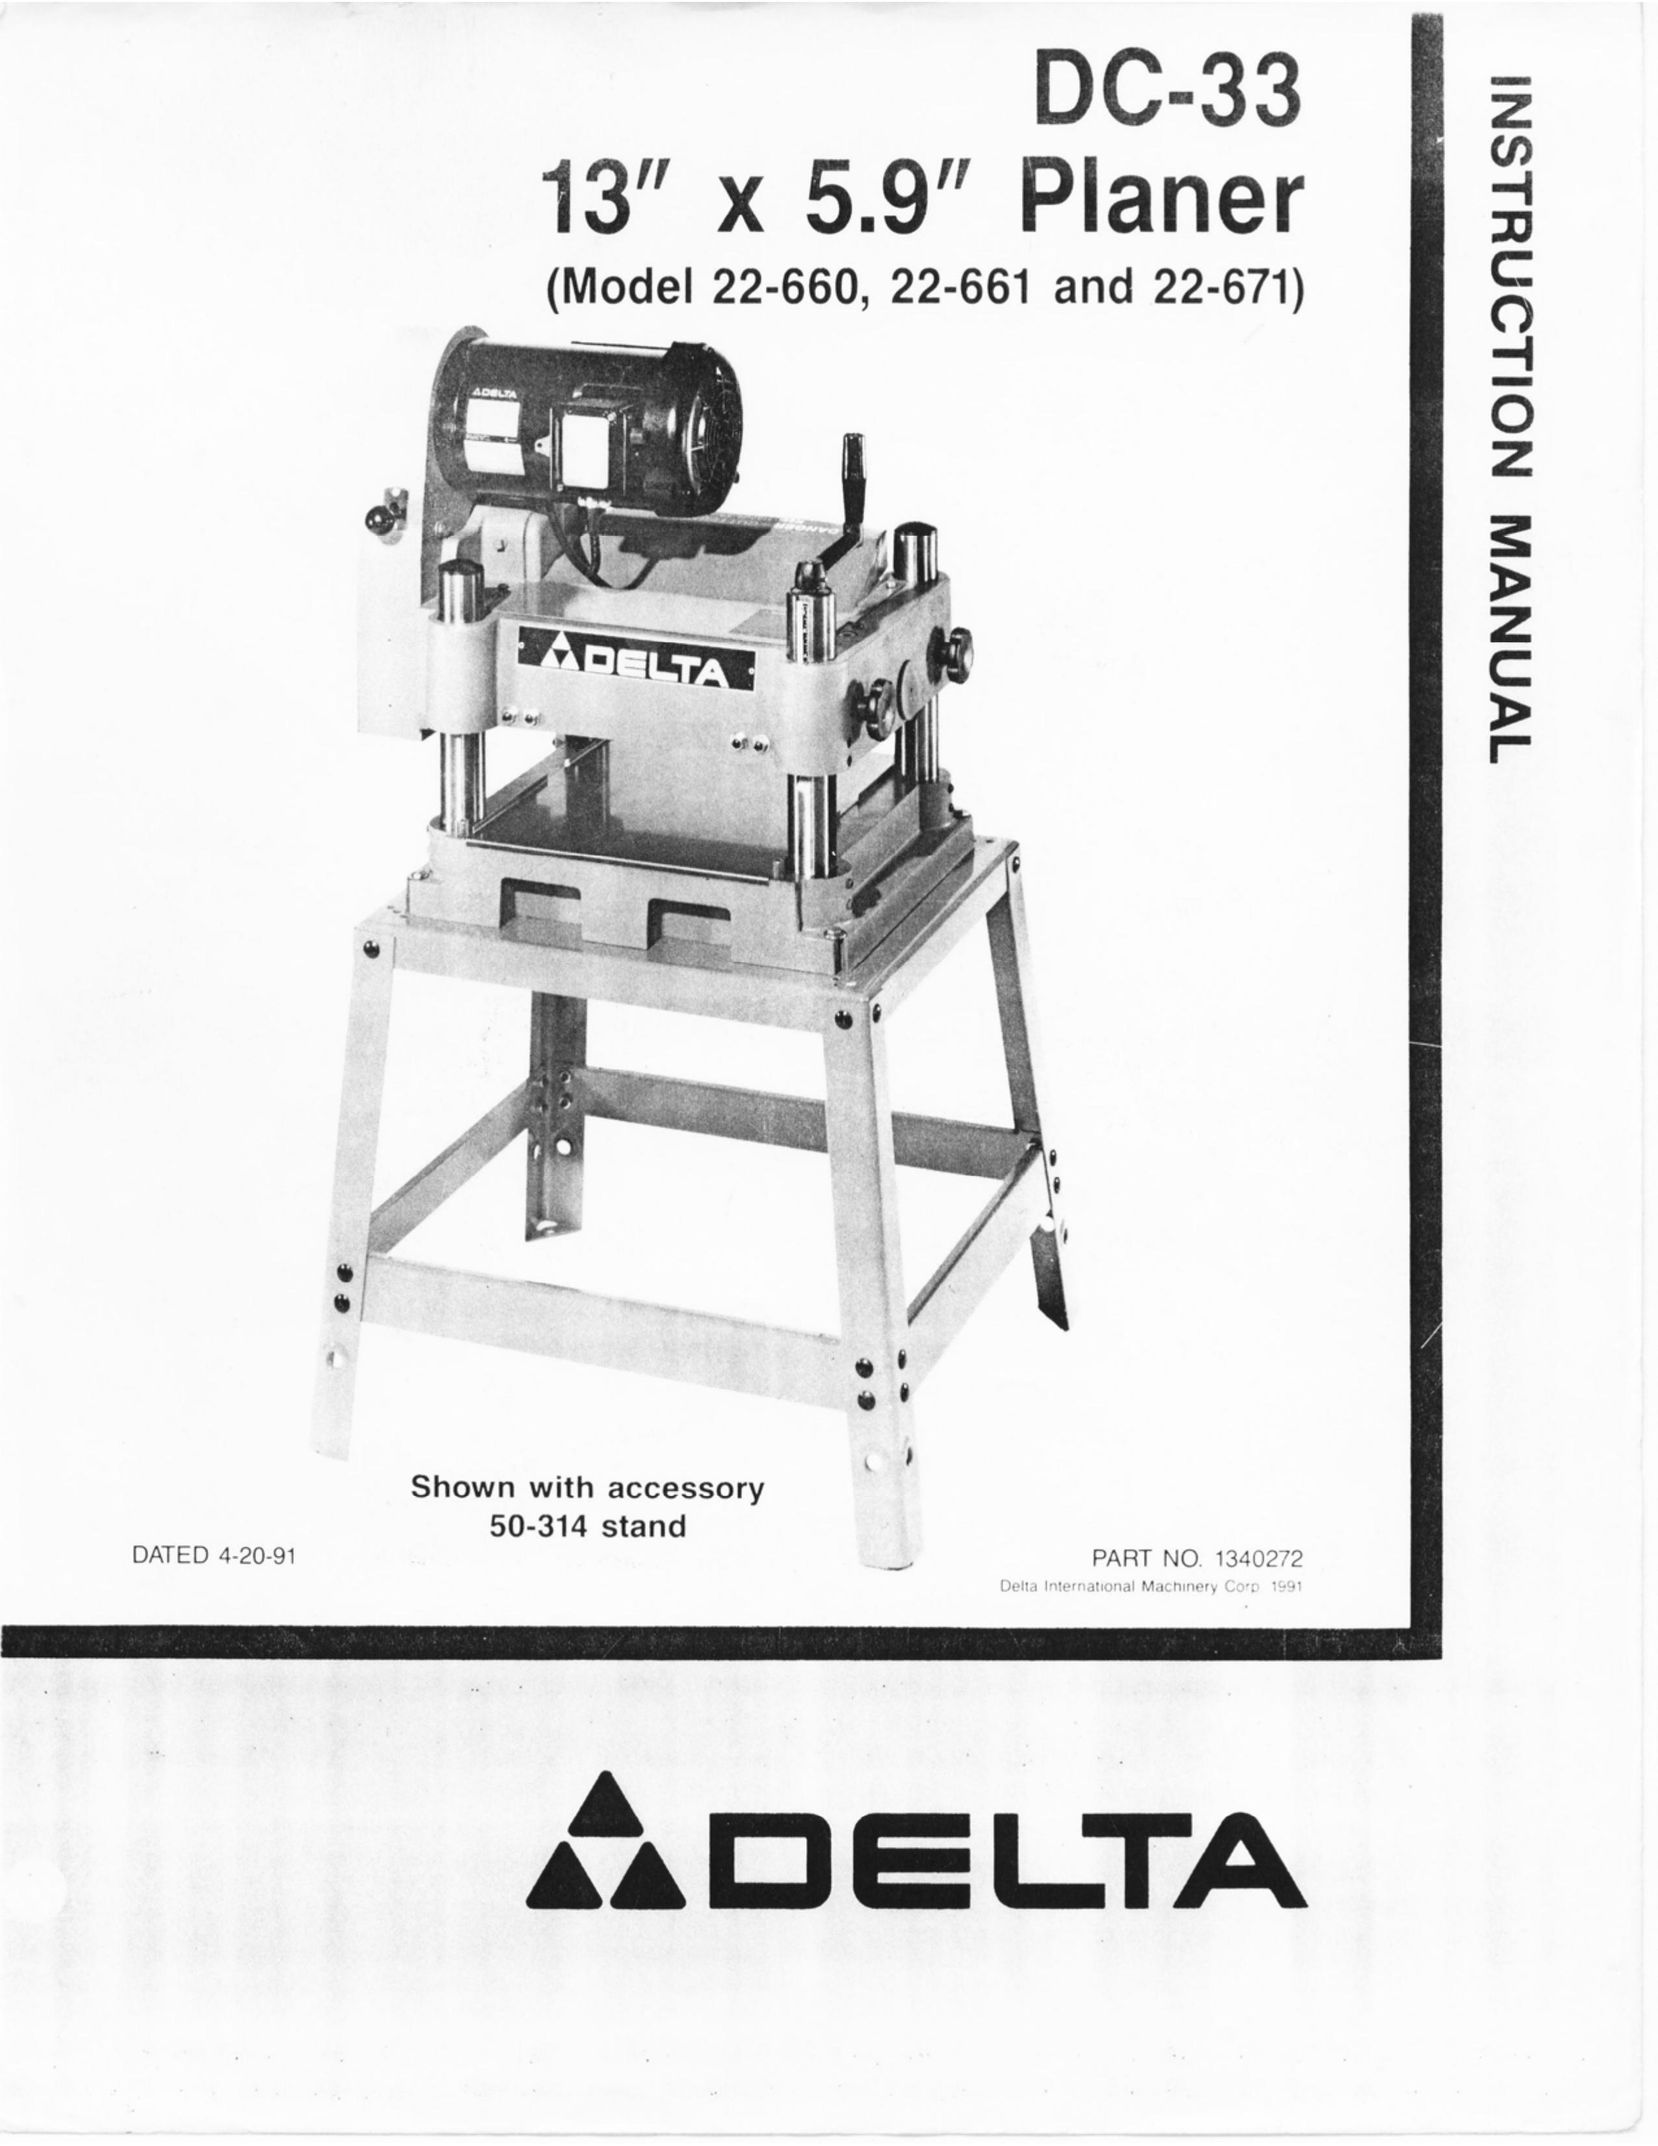 Delta 22-661 Planer User Manual